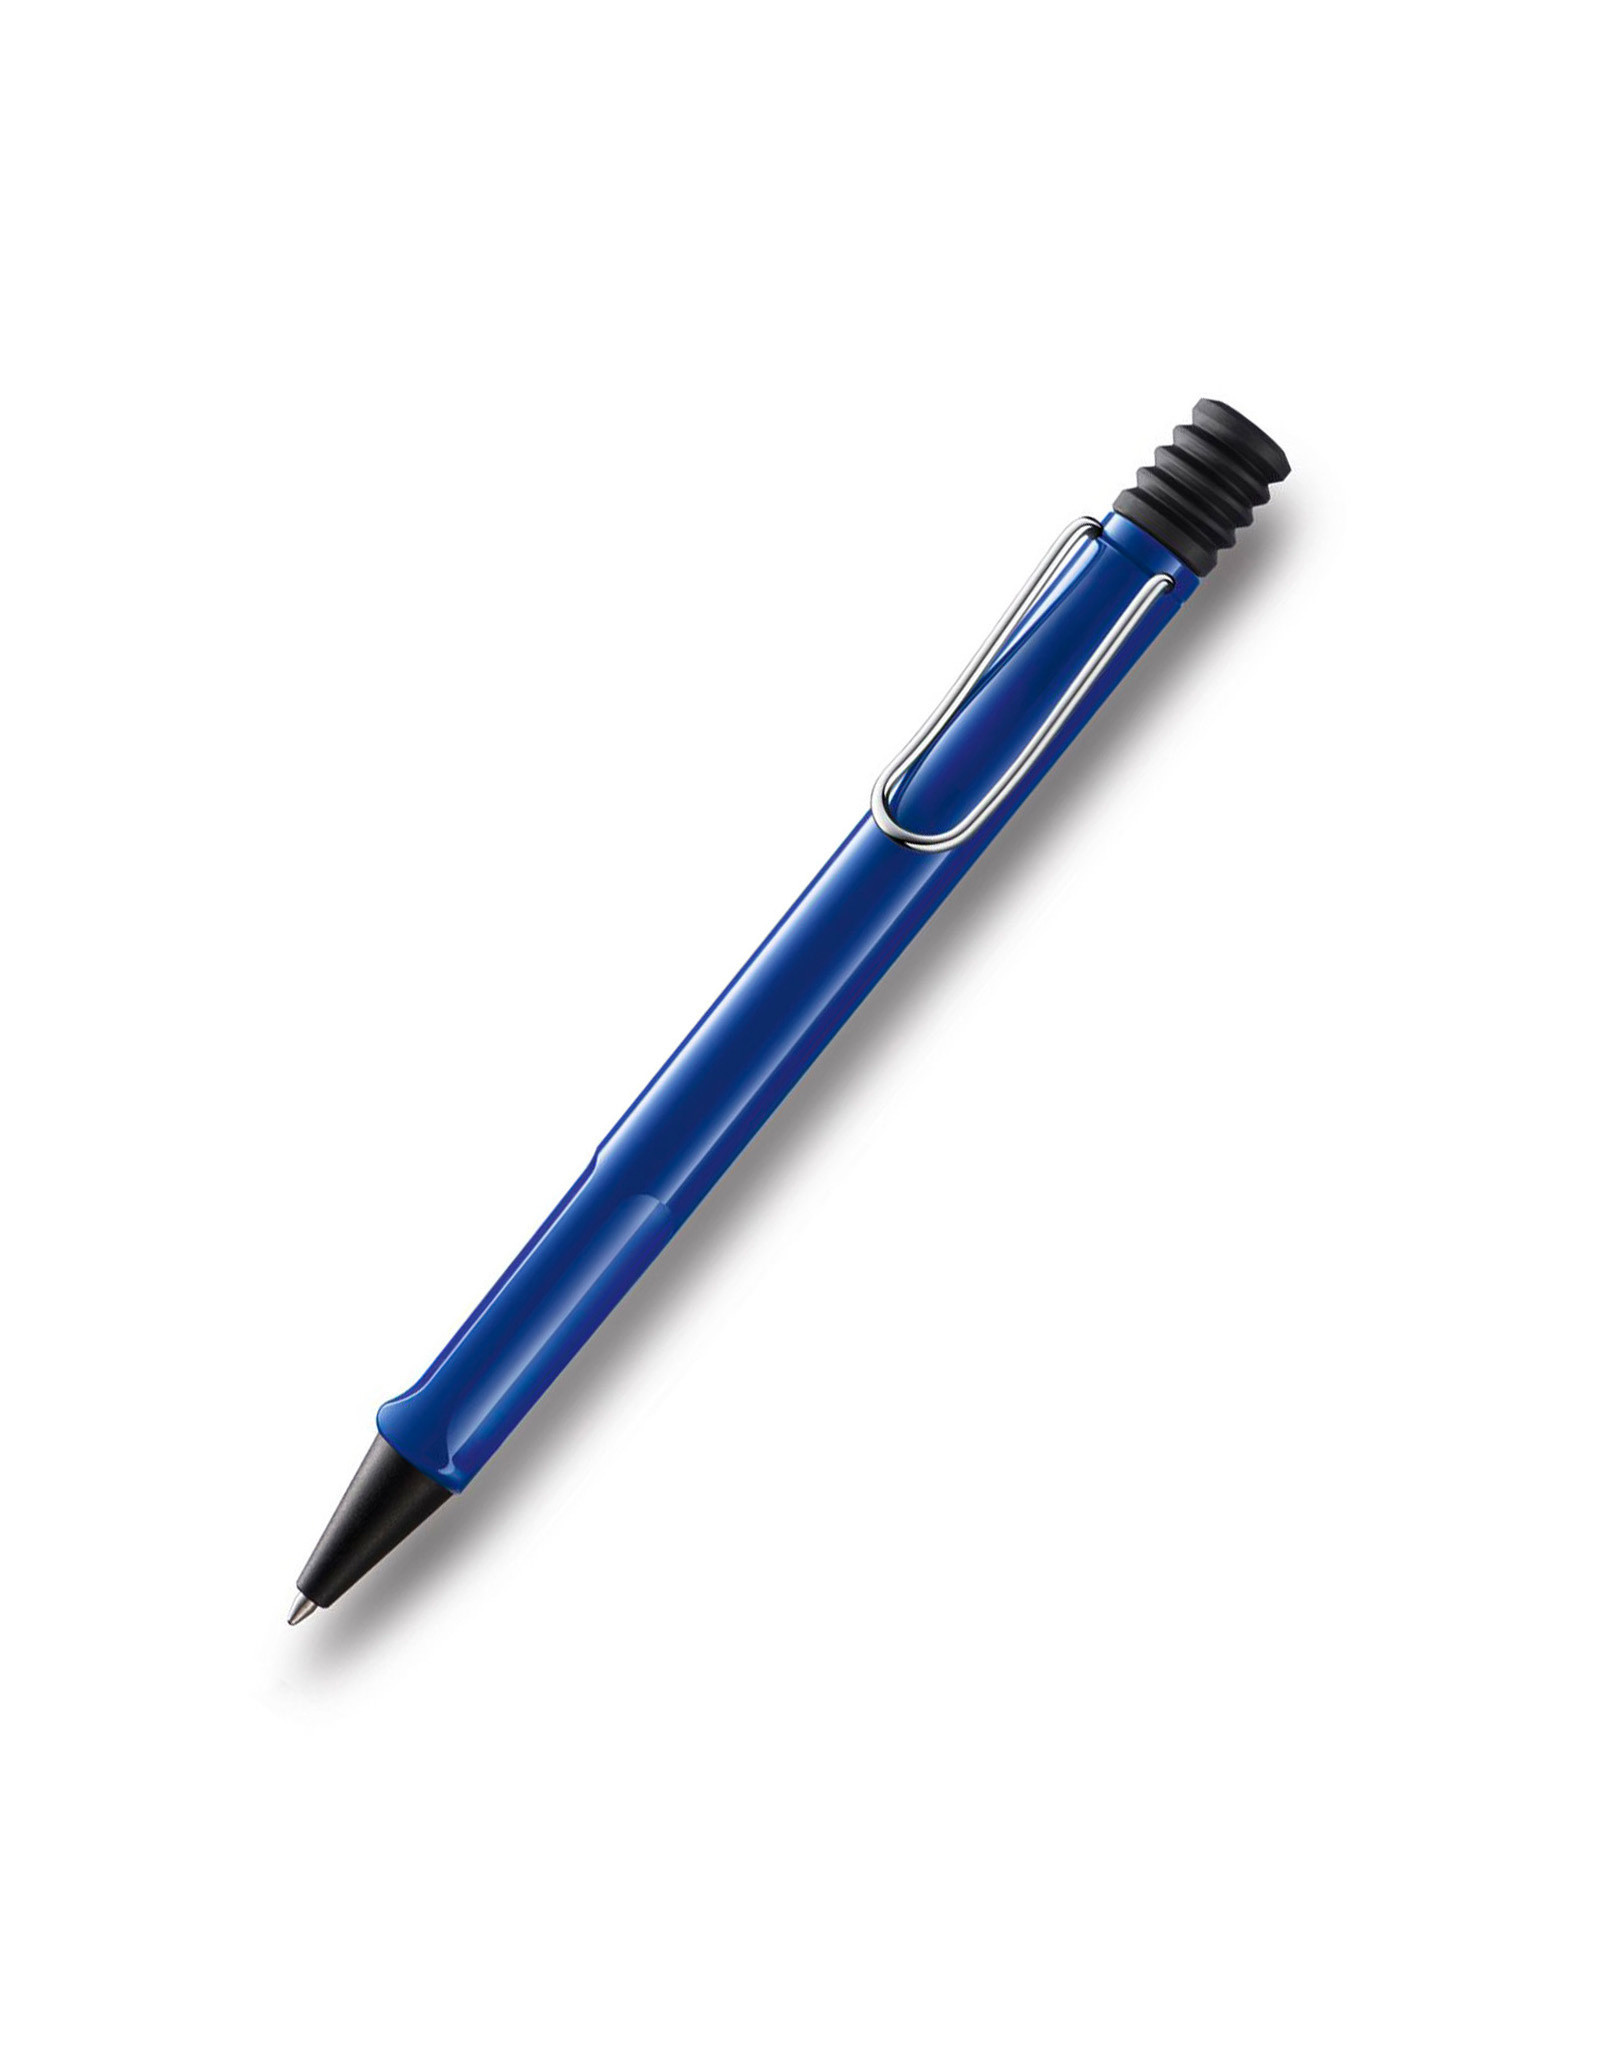 LAMY LAMY Safari Ballpoint Pen, Blue